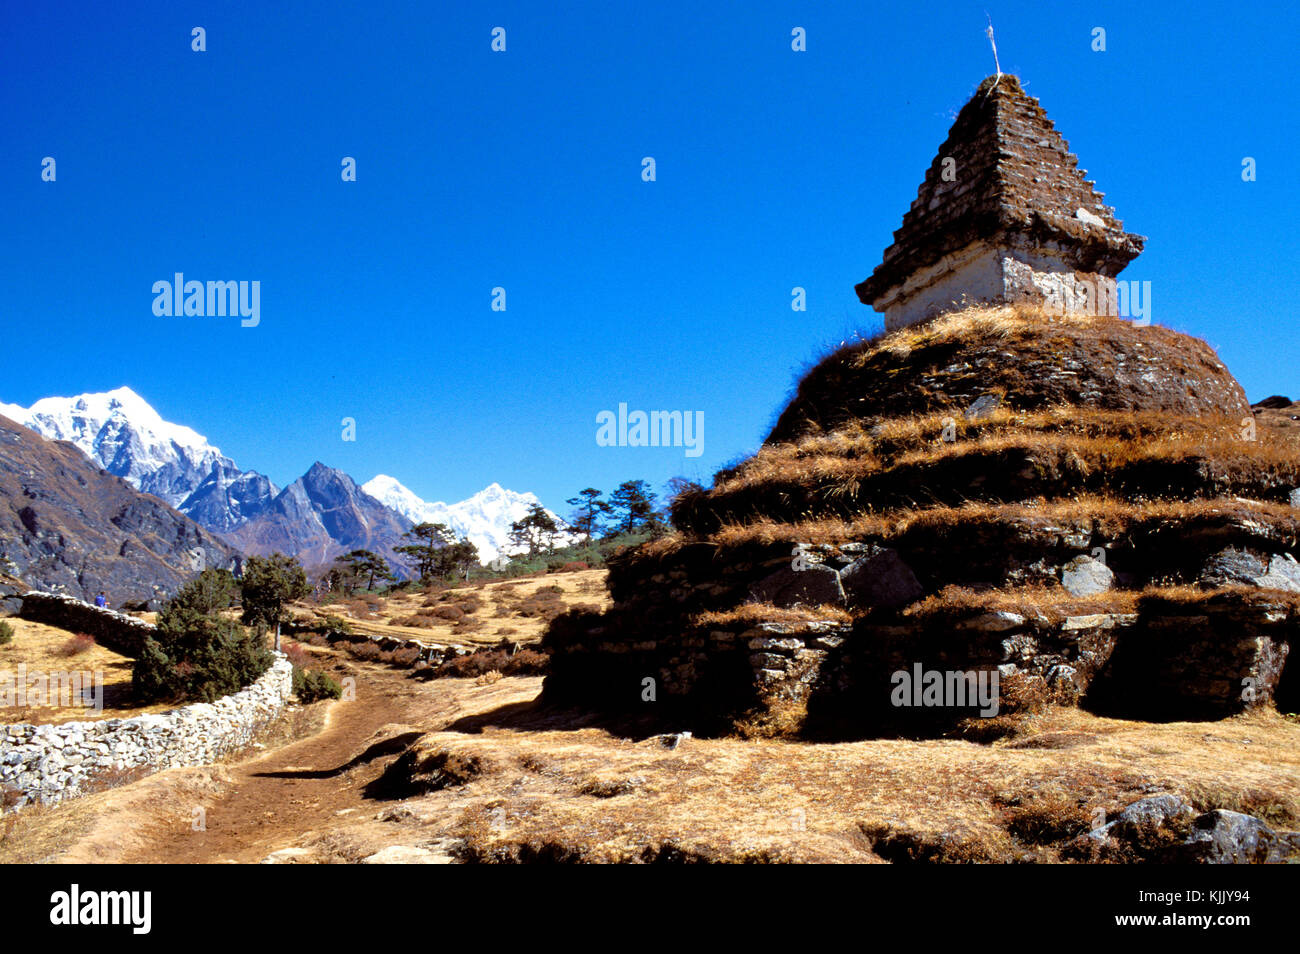 Stupa along a Mount Everest path, Solu Khumbu. Nepal. Stock Photo